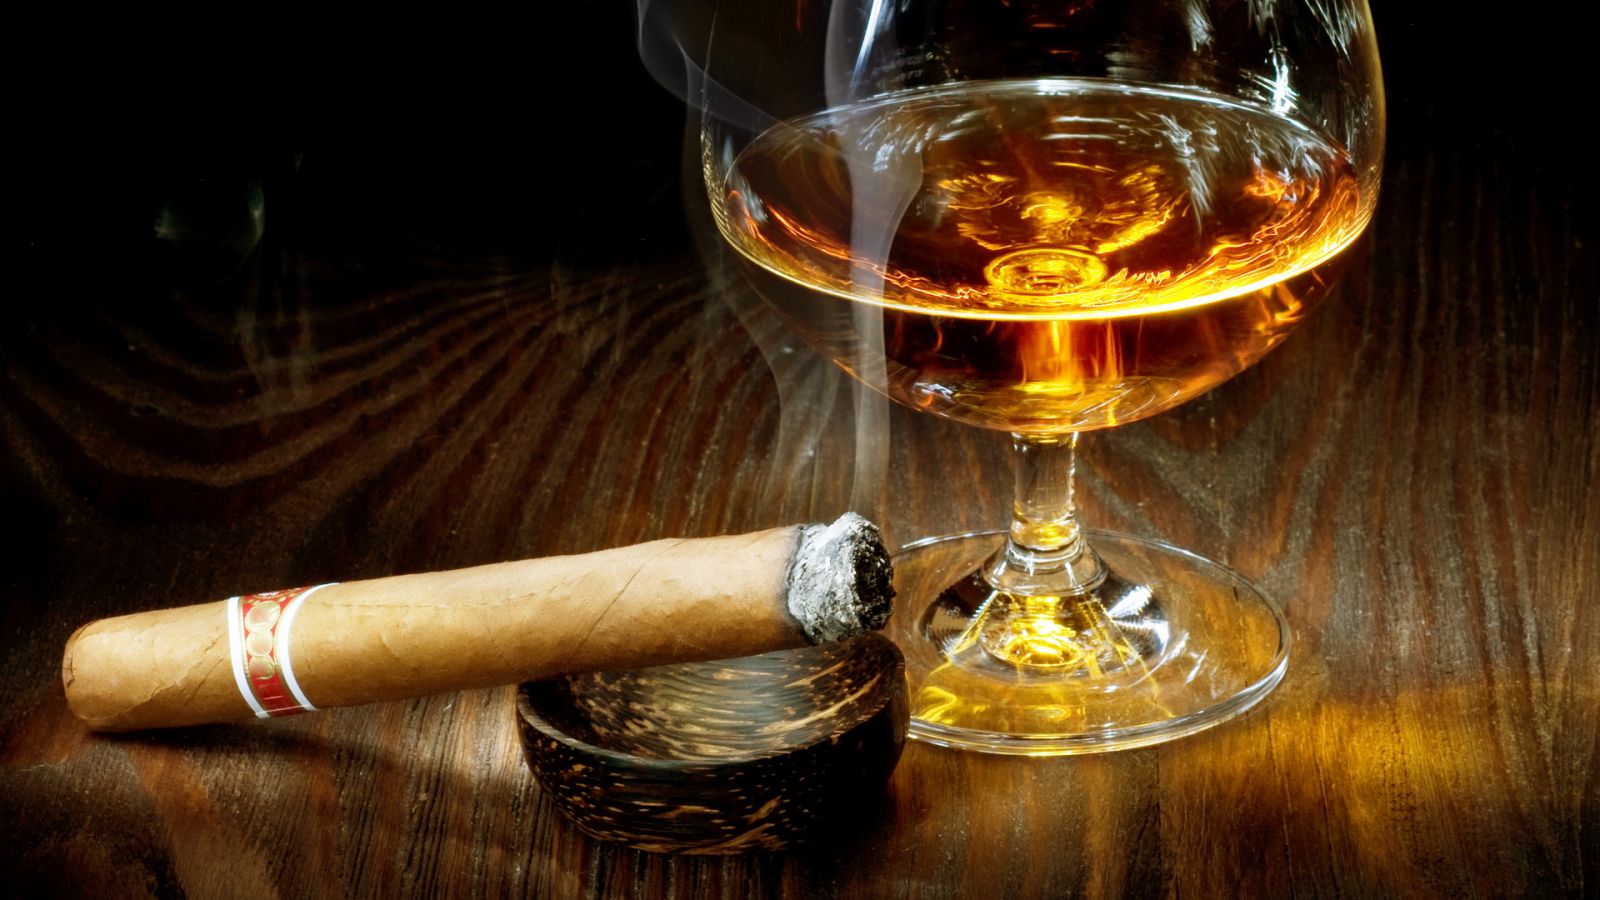 Цены на табак и алкоголь вырастут из-за повышенных налогов